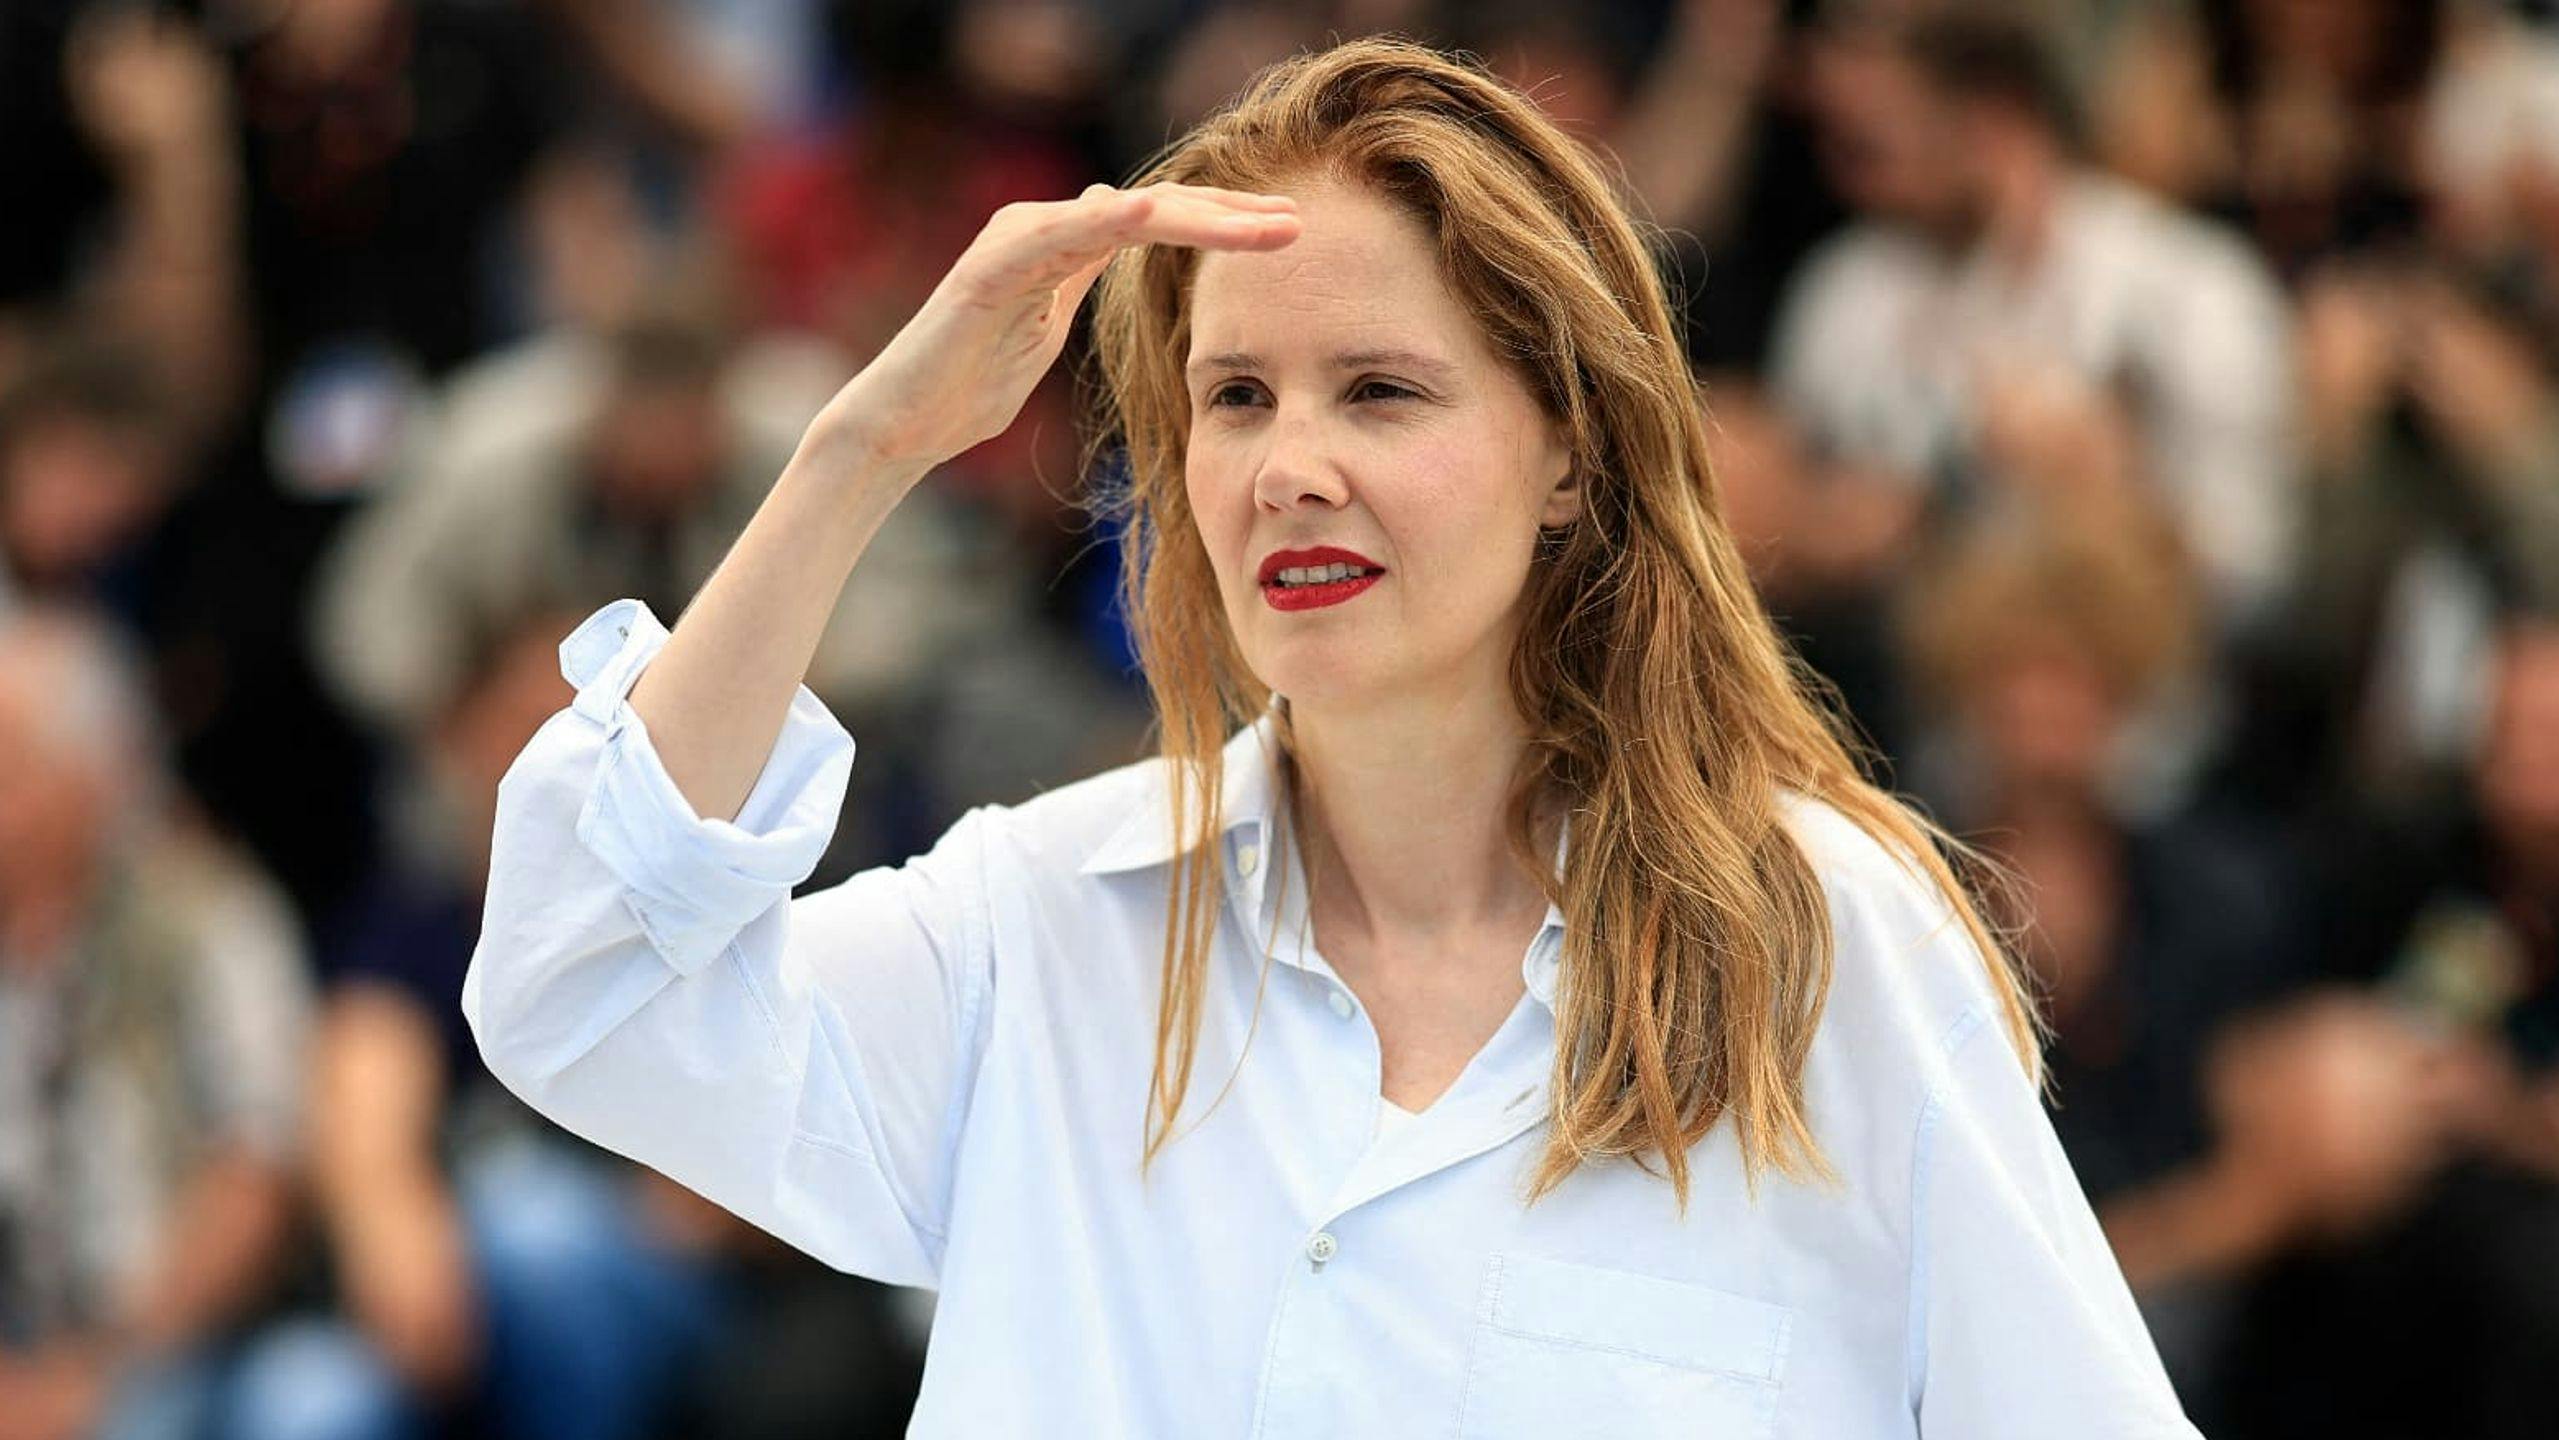 La directora francesa Justine Triet, en el photocall de 'Anatomía de una caída' en Cannes 2023